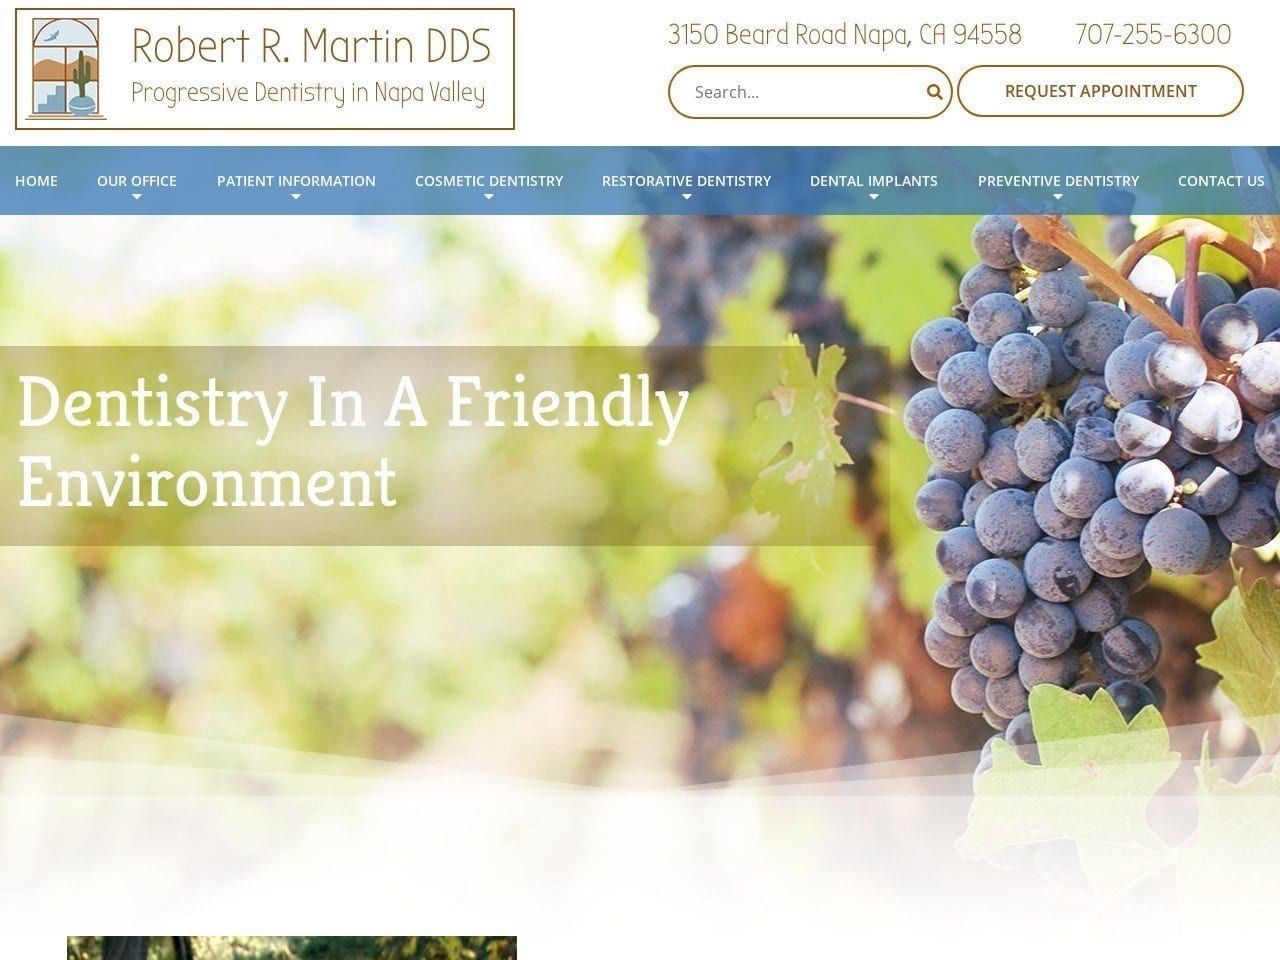 Martin Robert R DDS Website Screenshot from robertrmartindds.com